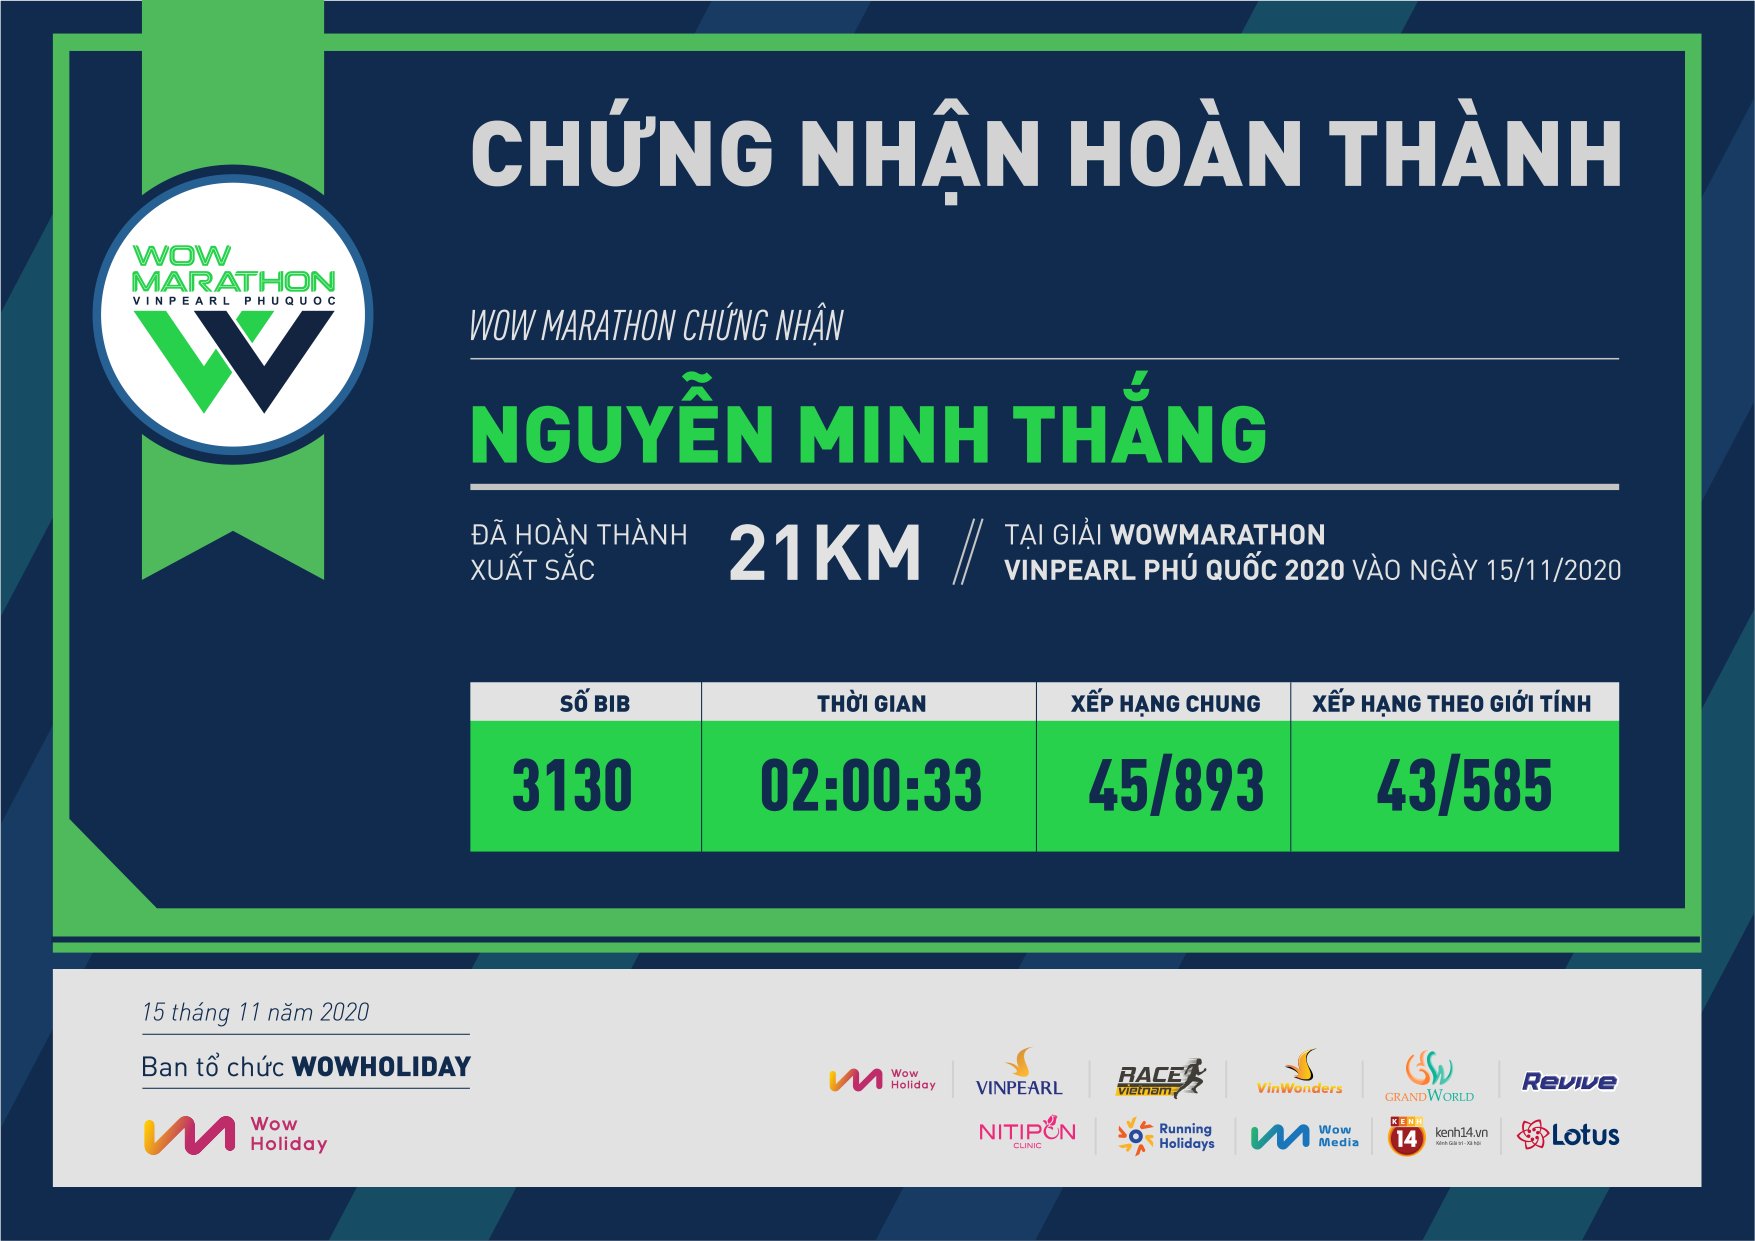 3130 - Nguyễn Minh Thắng